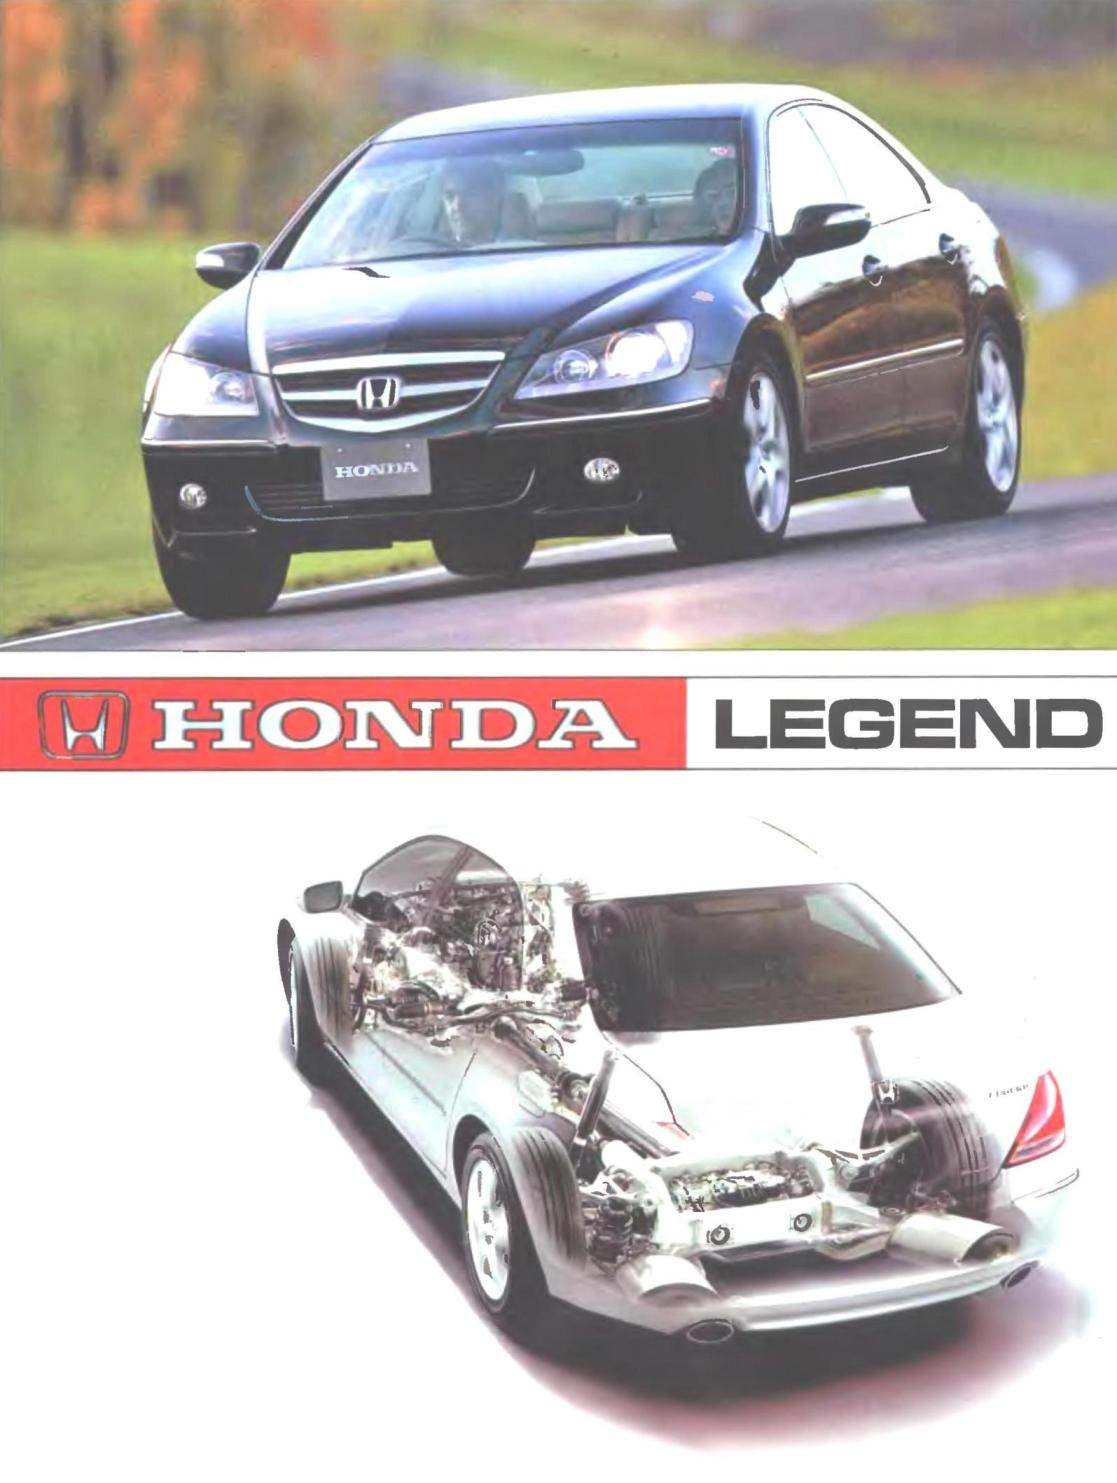 Представительский полноприводной автомобиль Honda Legend выпуска 2005 года создан с использованием самых современных автомобильных технологий. Машина оснащена десятками устройств, которые помогают водителю, защищают его и создают ему и пассажирам комфортные условия.